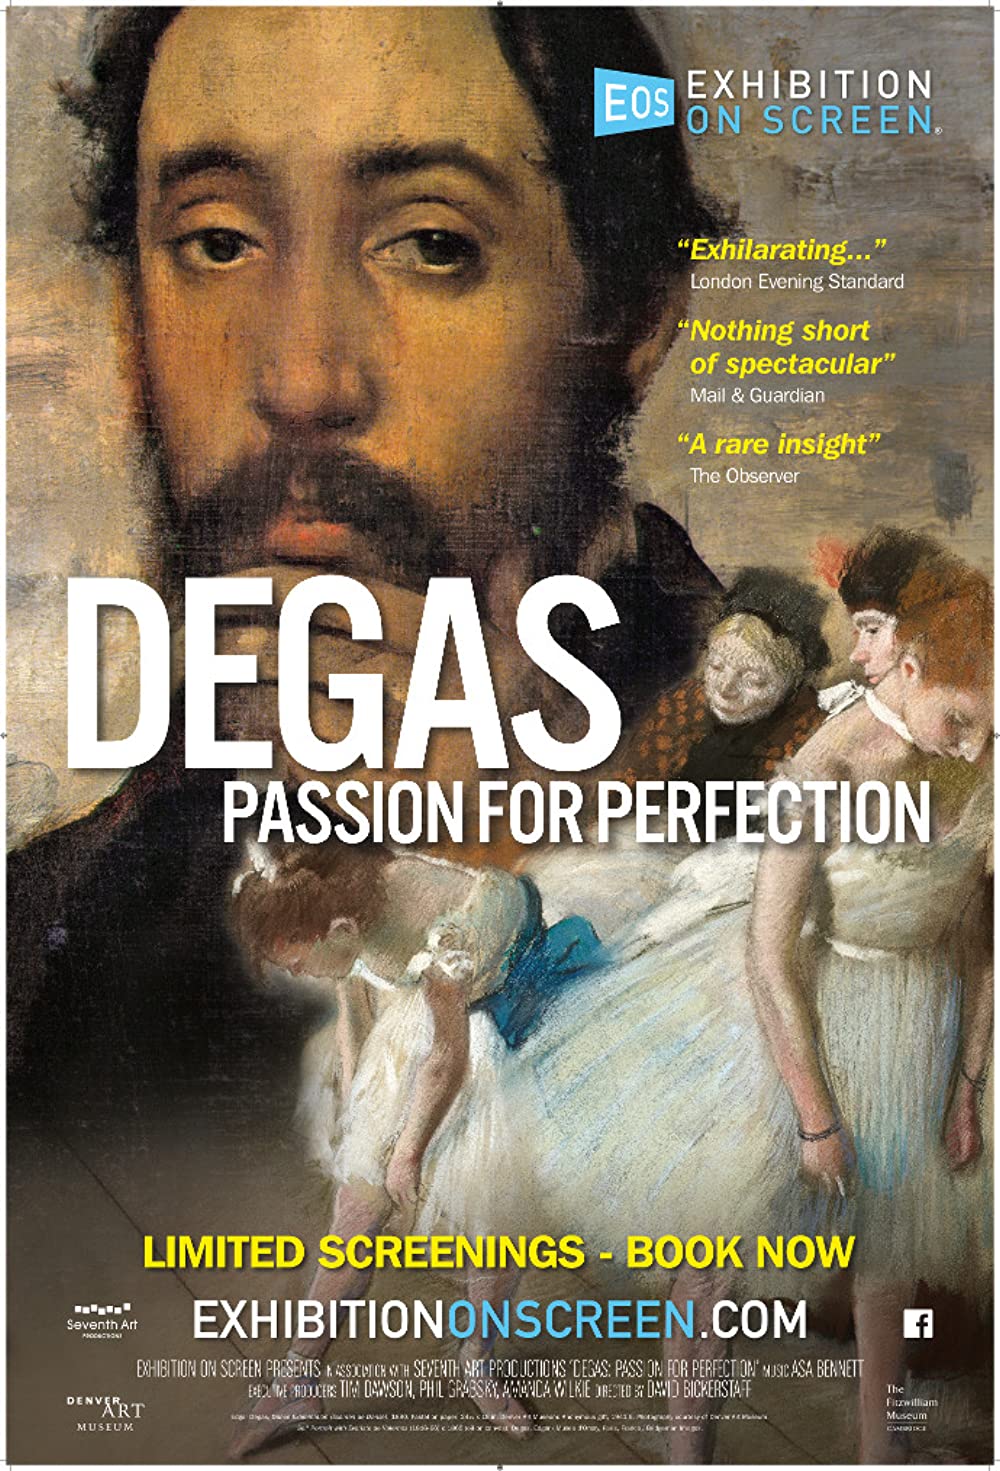 ดูหนังออนไลน์ฟรี Exhibition on Screen Degas Passion For Perfection (2018)